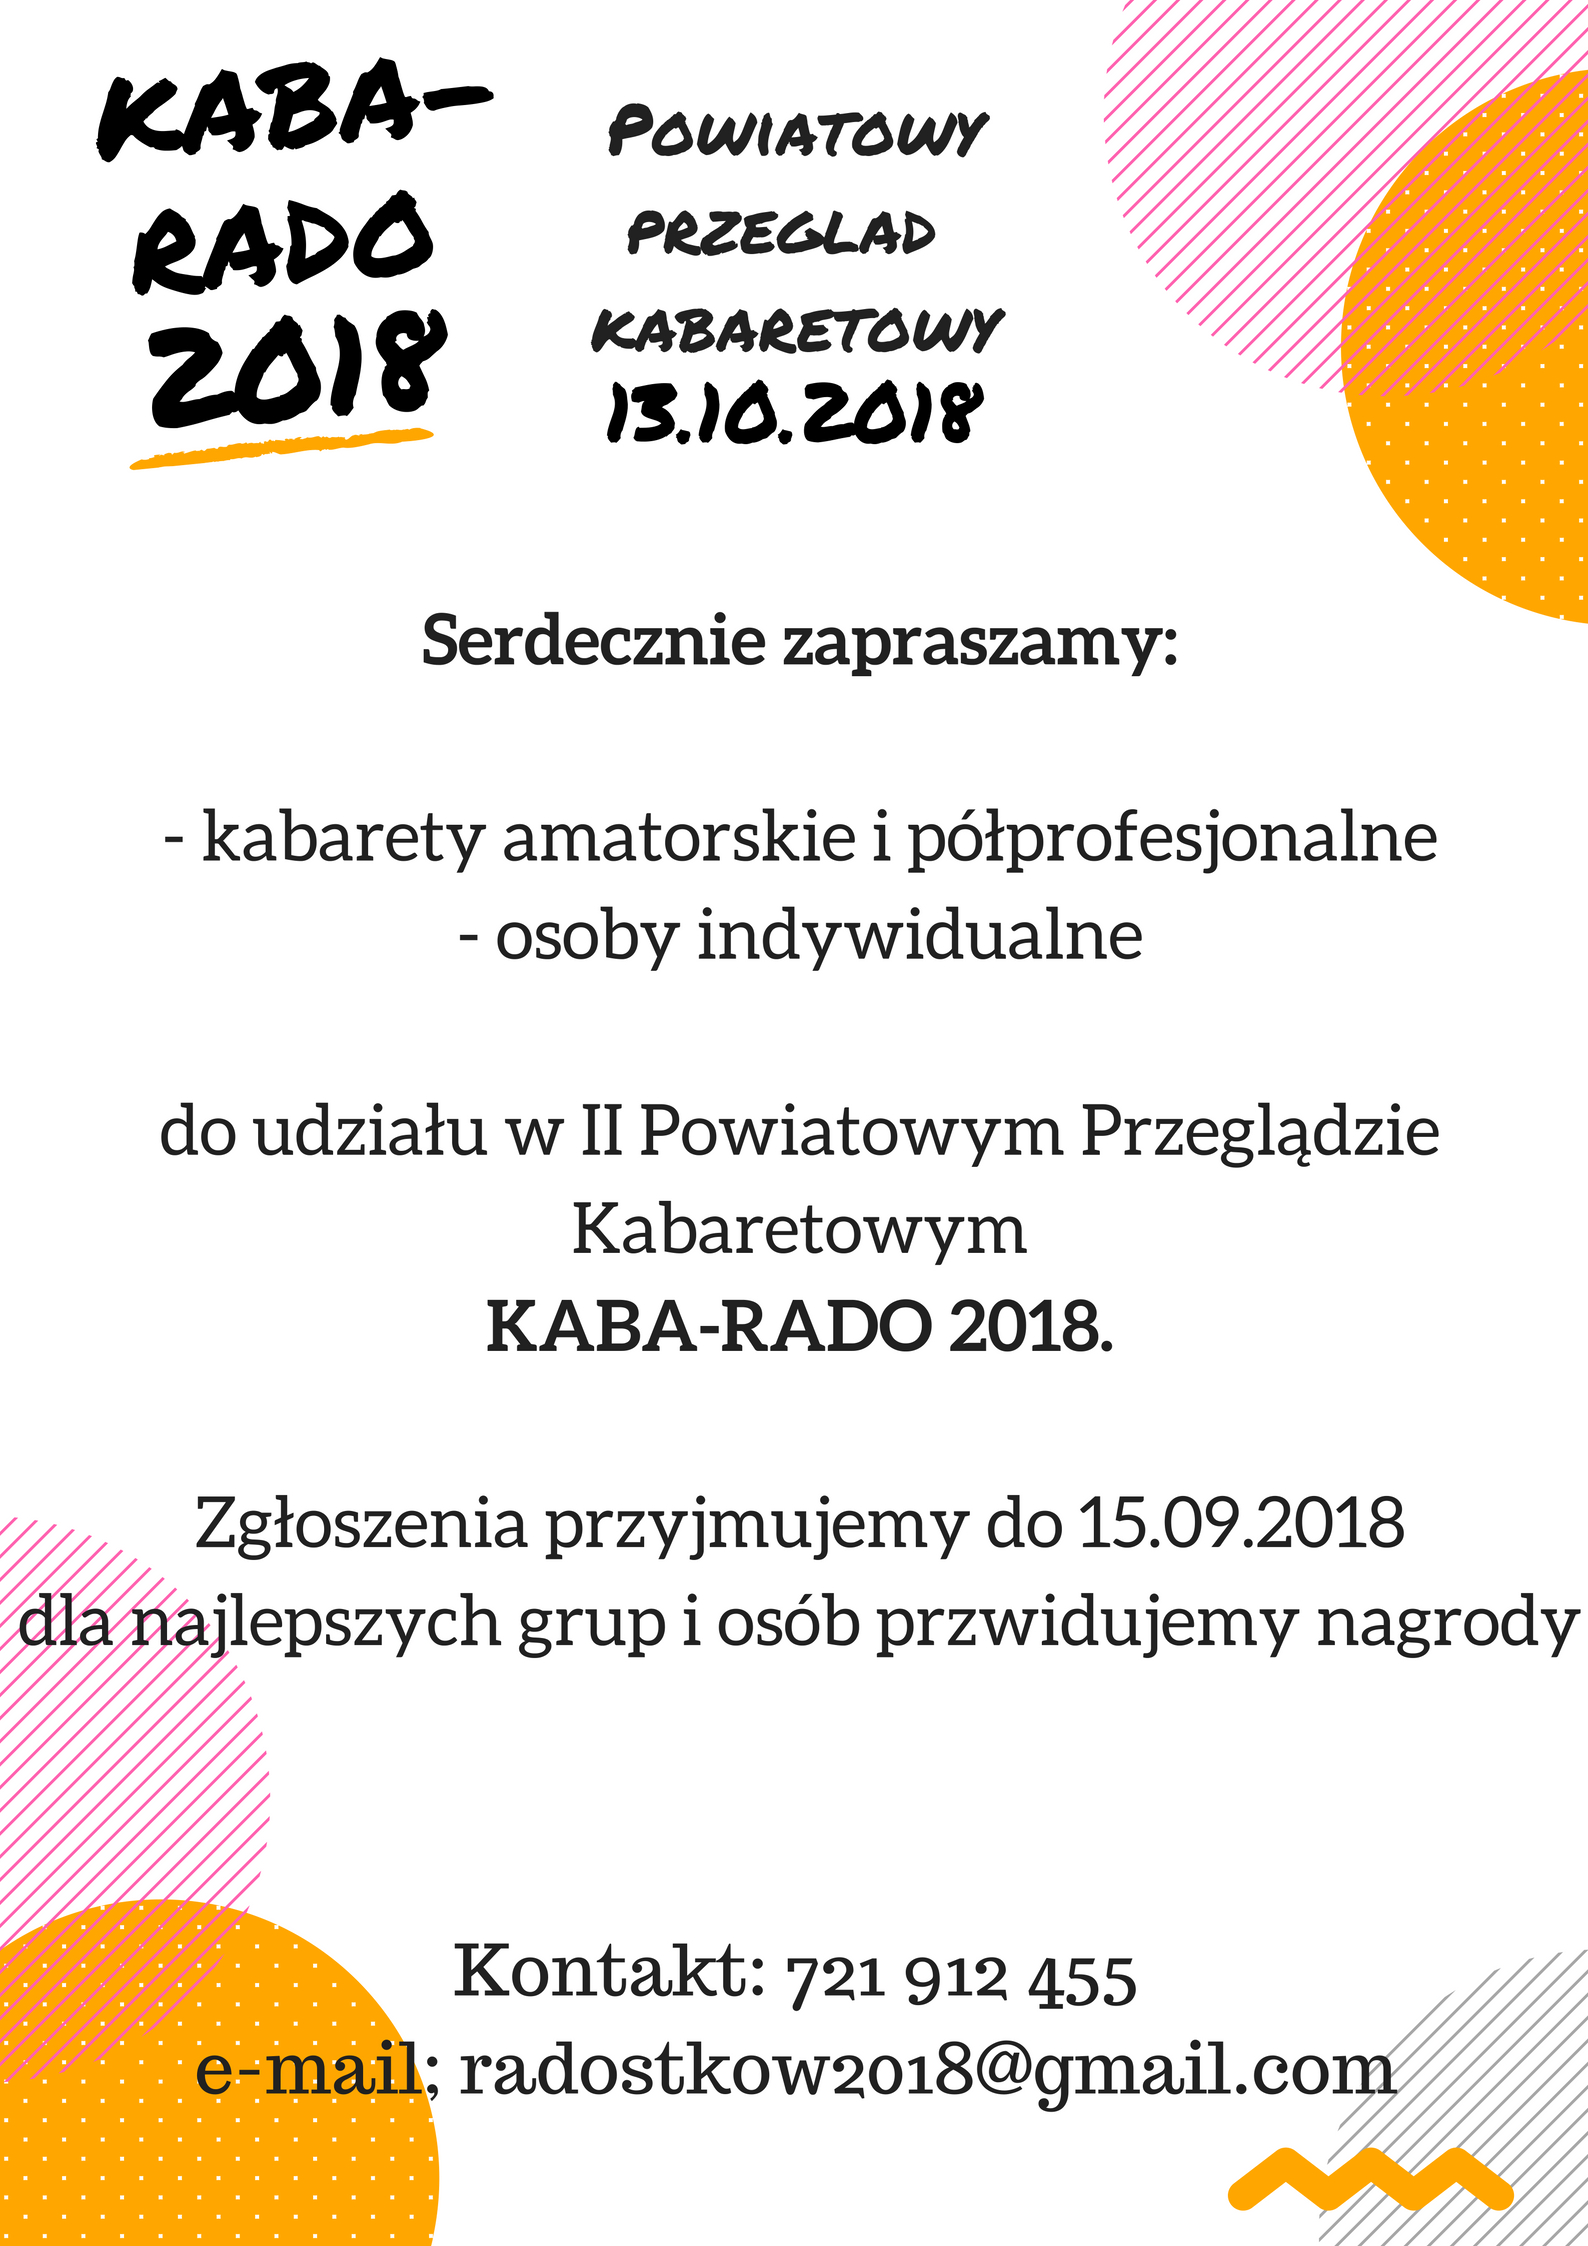 Powiatowy Przegląd Kabaretowy KABA-RADO 2018